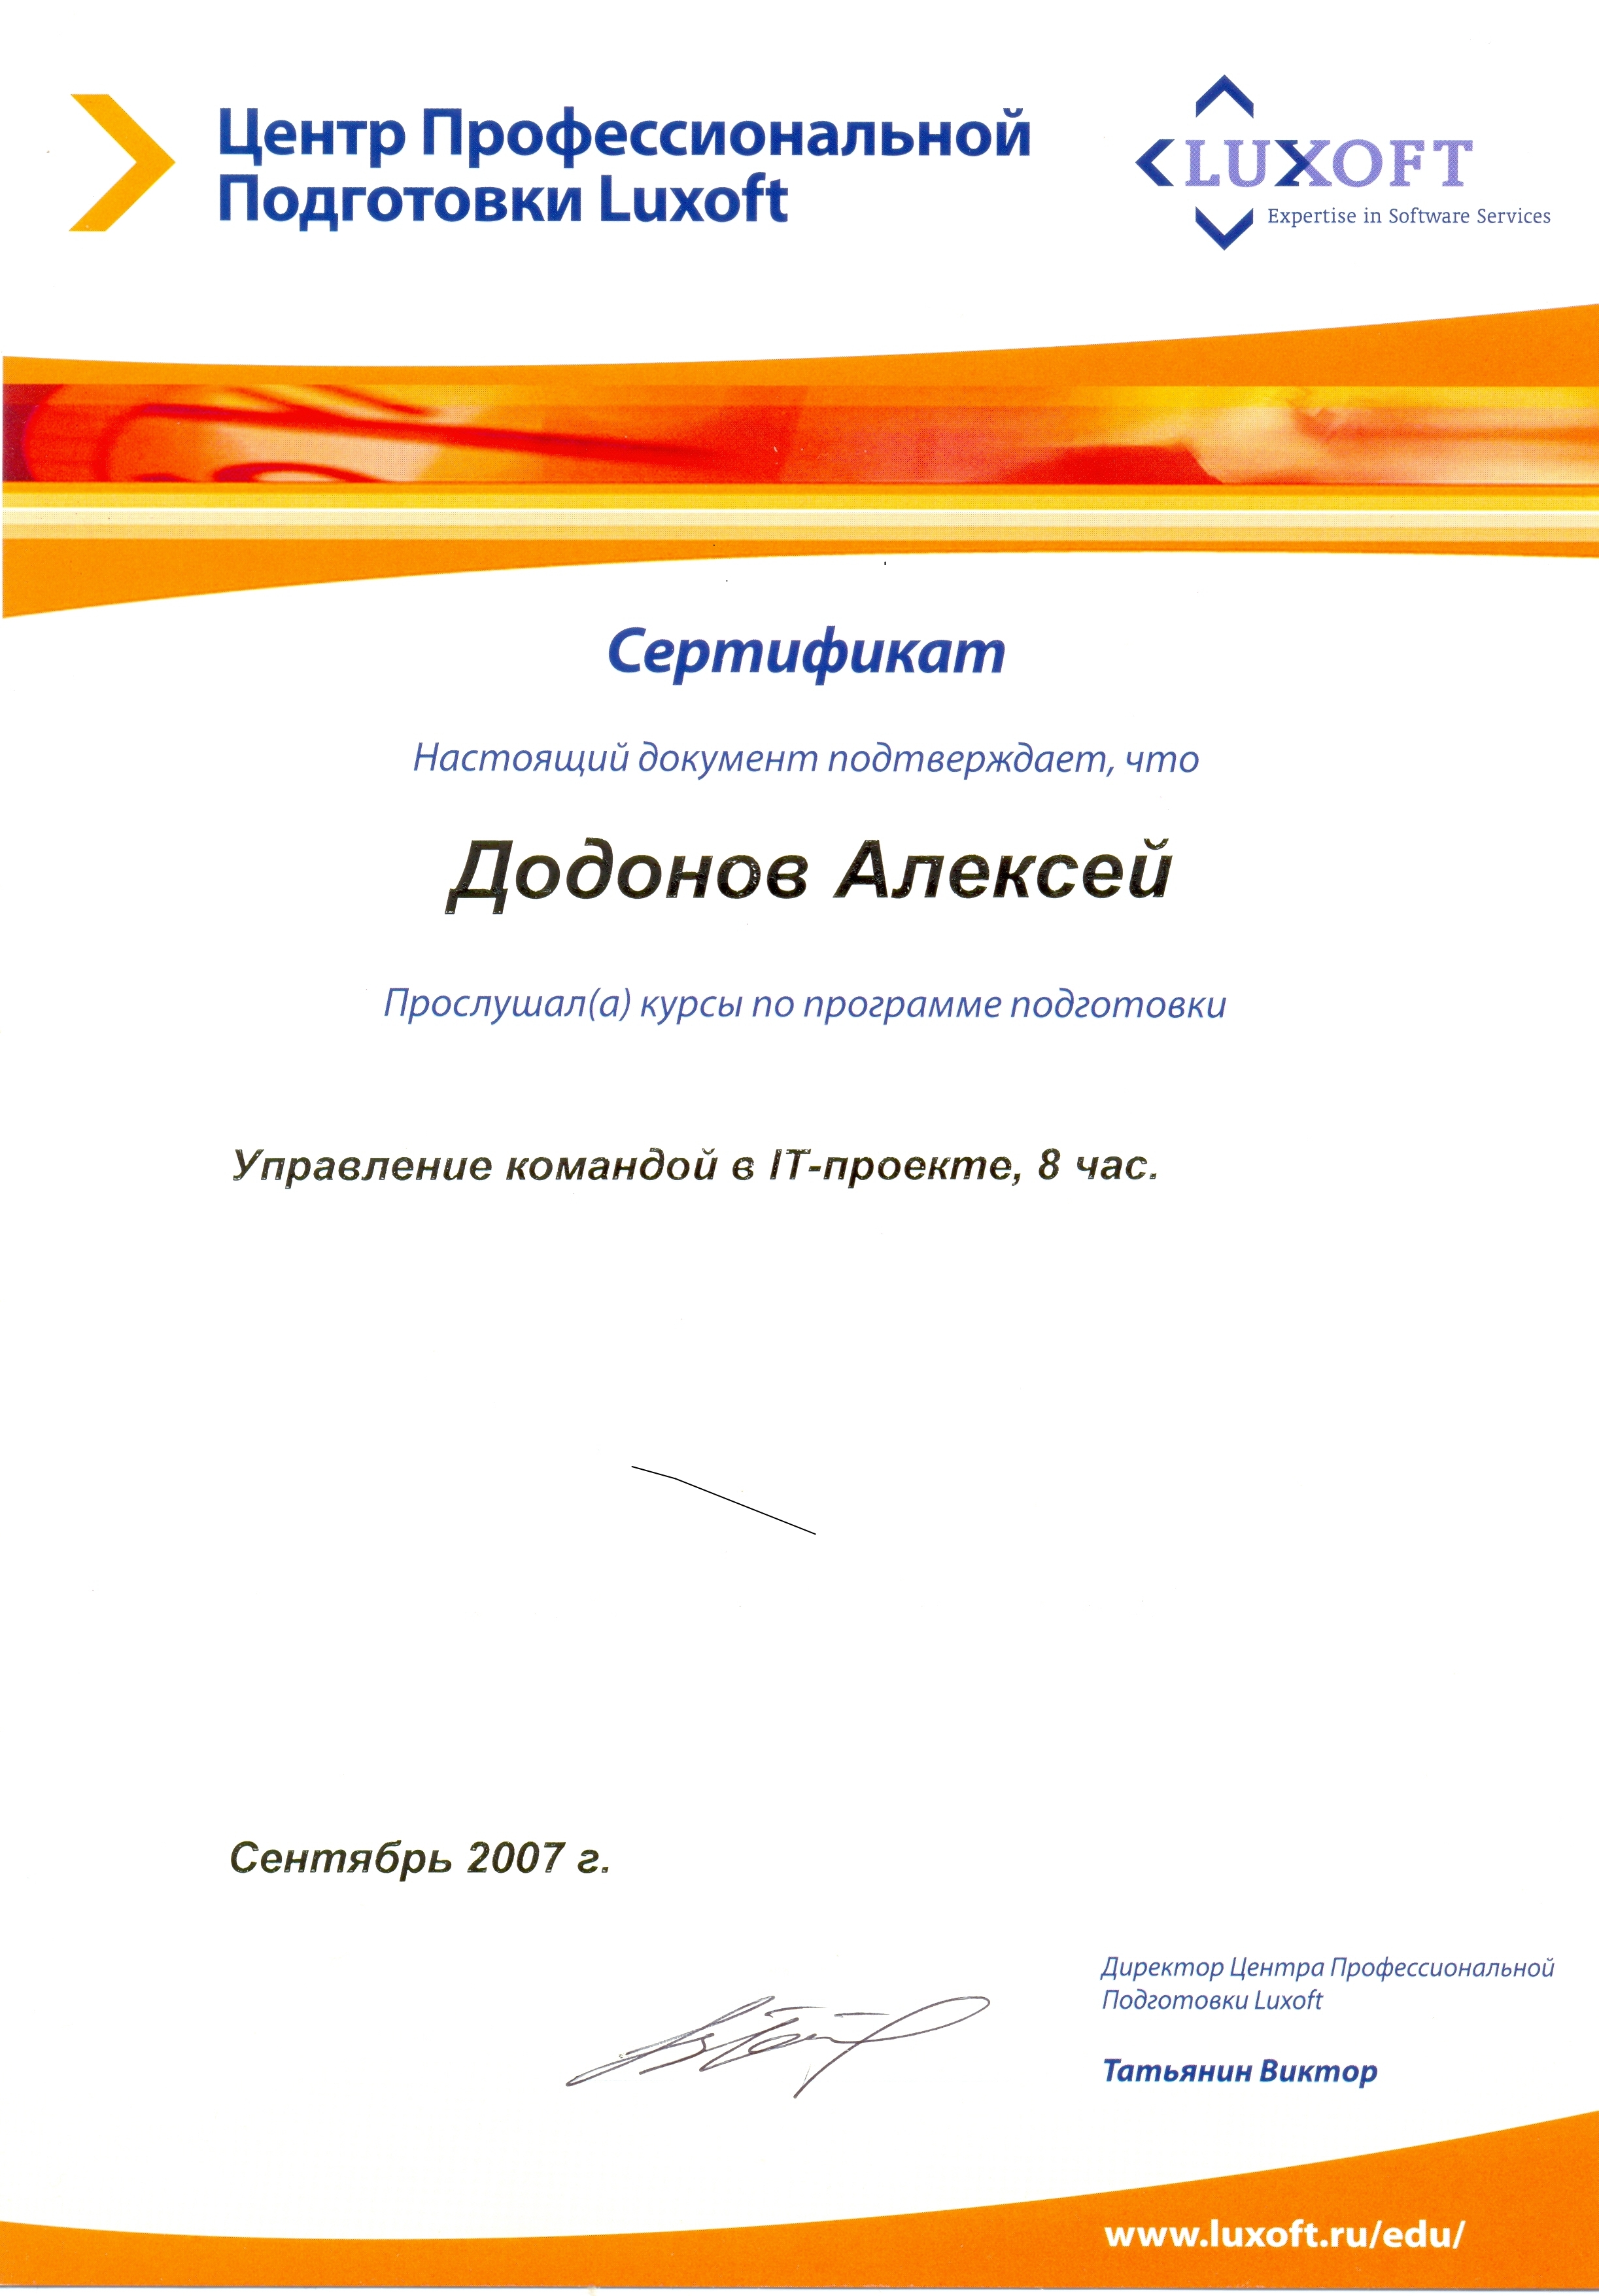 Сертификат Luxoft